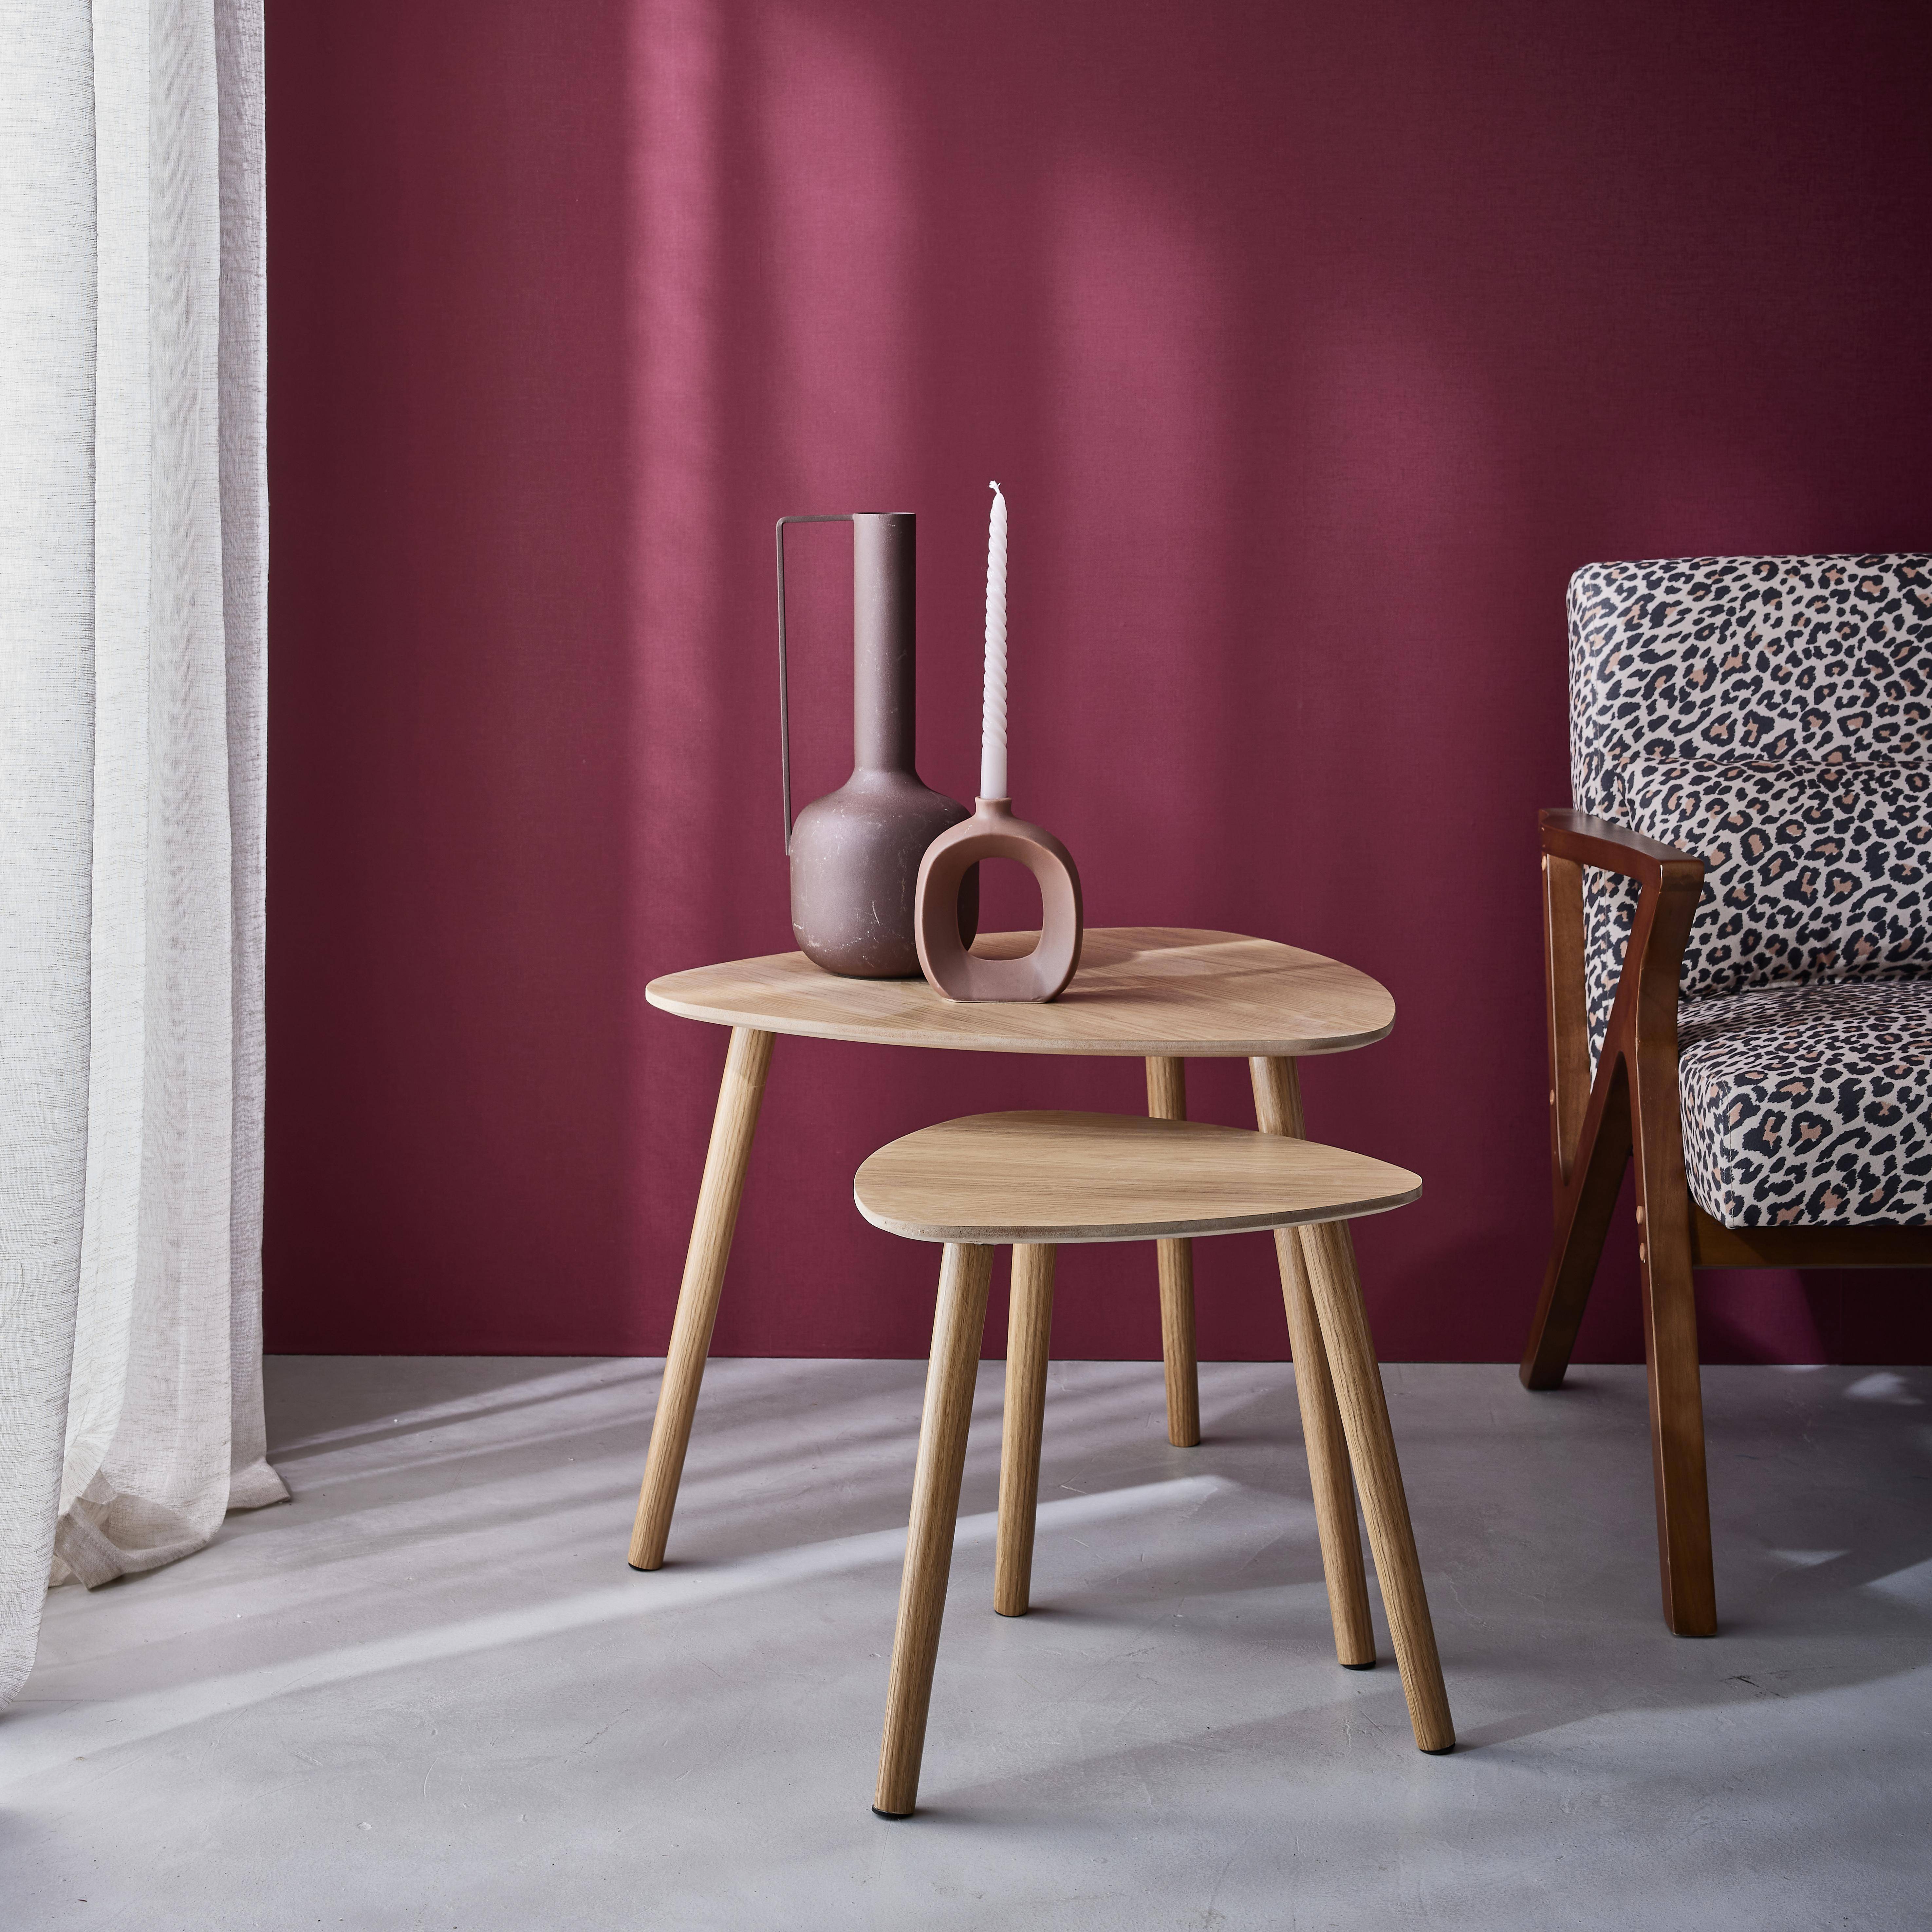 Set van 2 salontafels in Scandinavische stijl van MDF met natuurlijk houtdecor Photo1